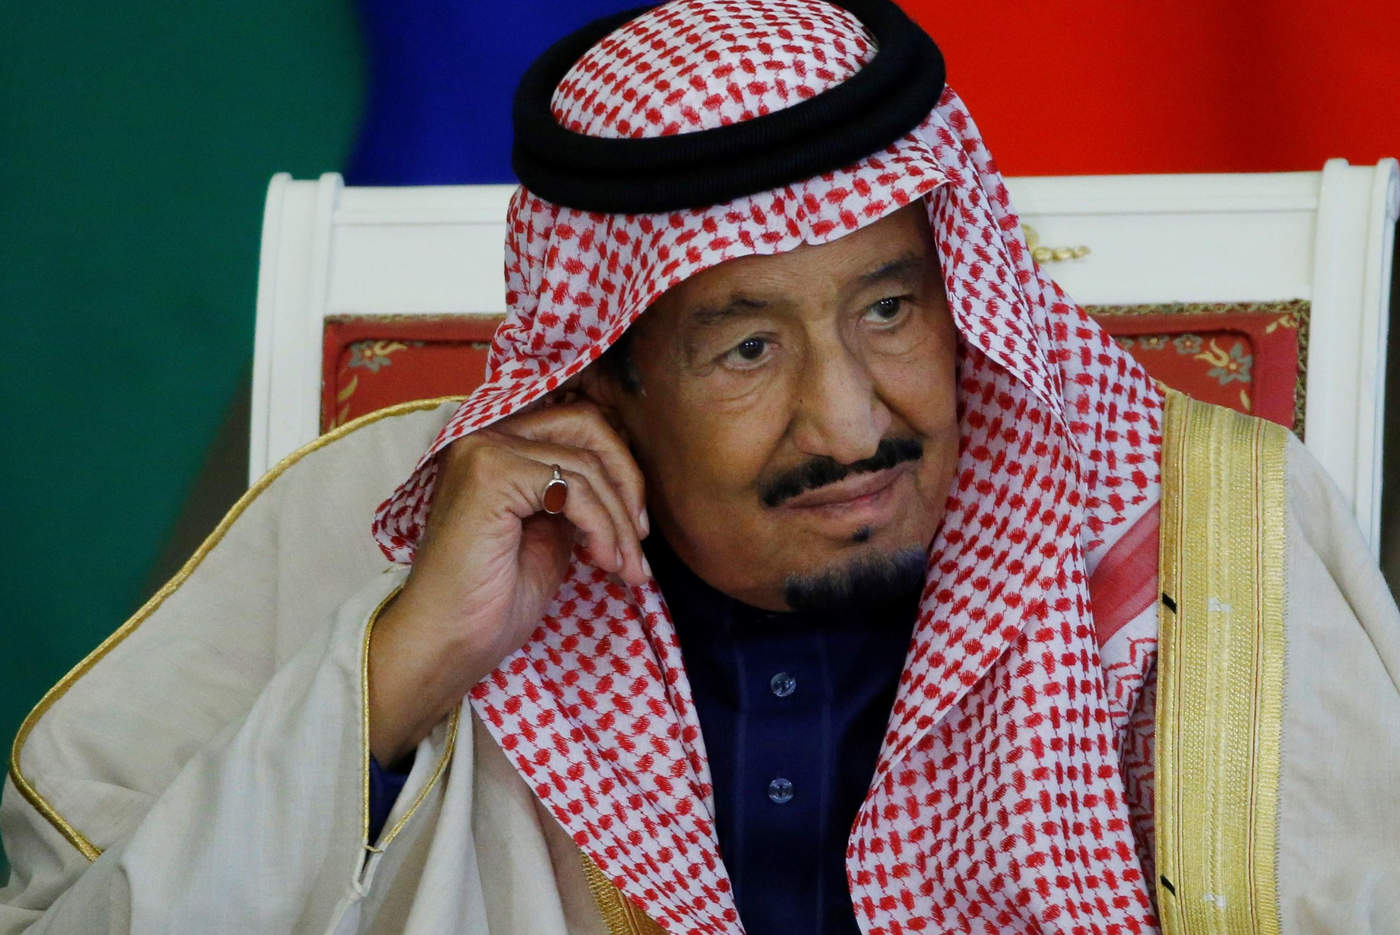 Rey saudí realiza cambios en su Gobierno tras crisis por caso Khashoggi. Noticias en tiempo real